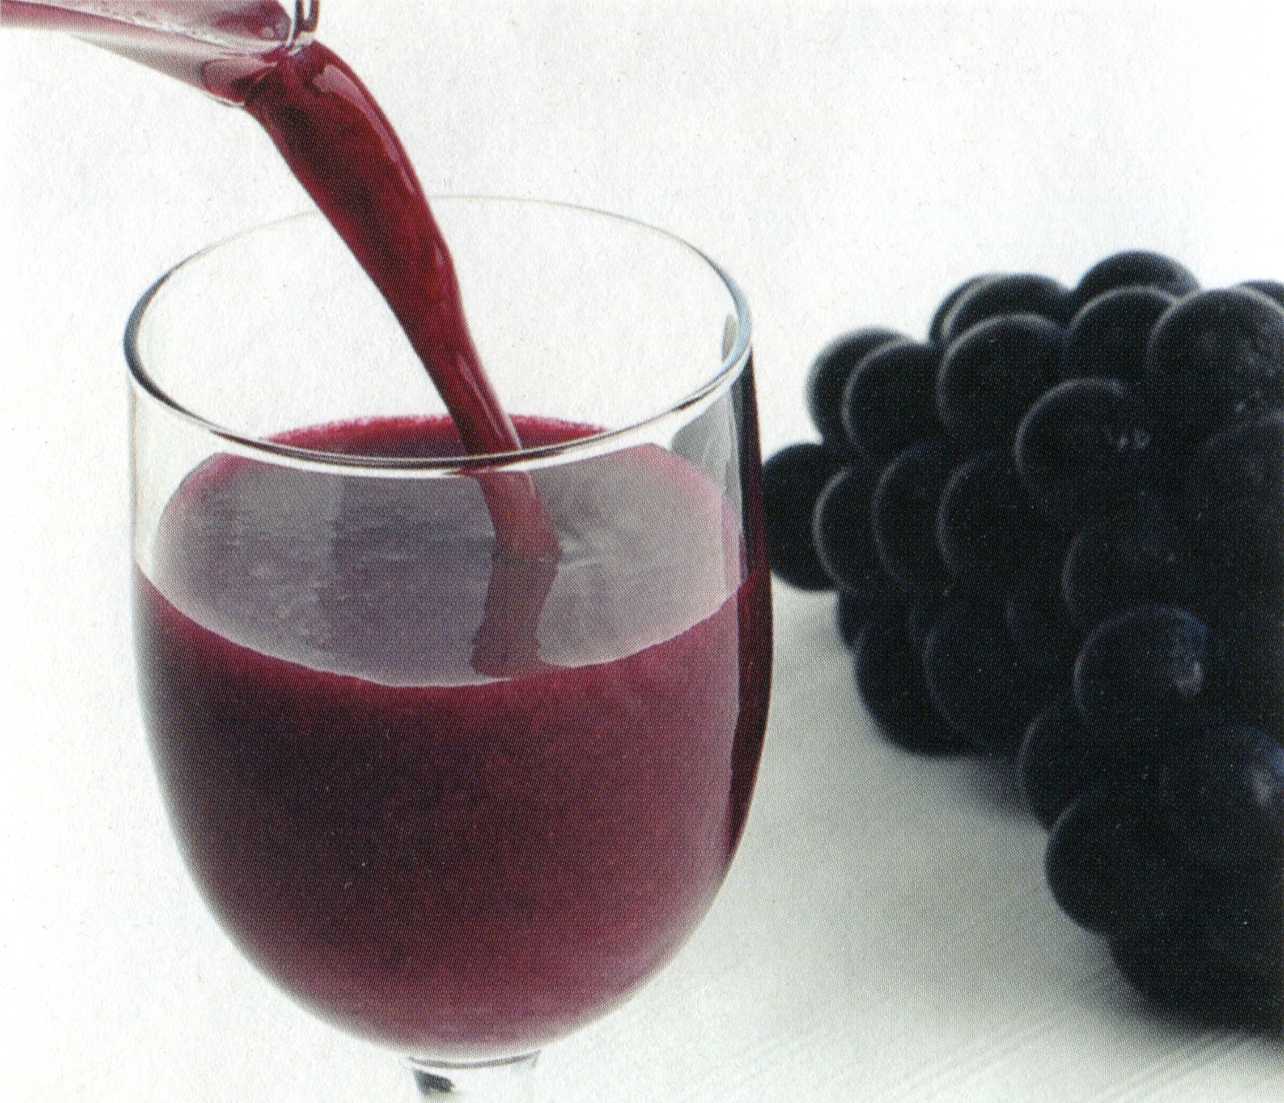 Польза и вред виноградного сока